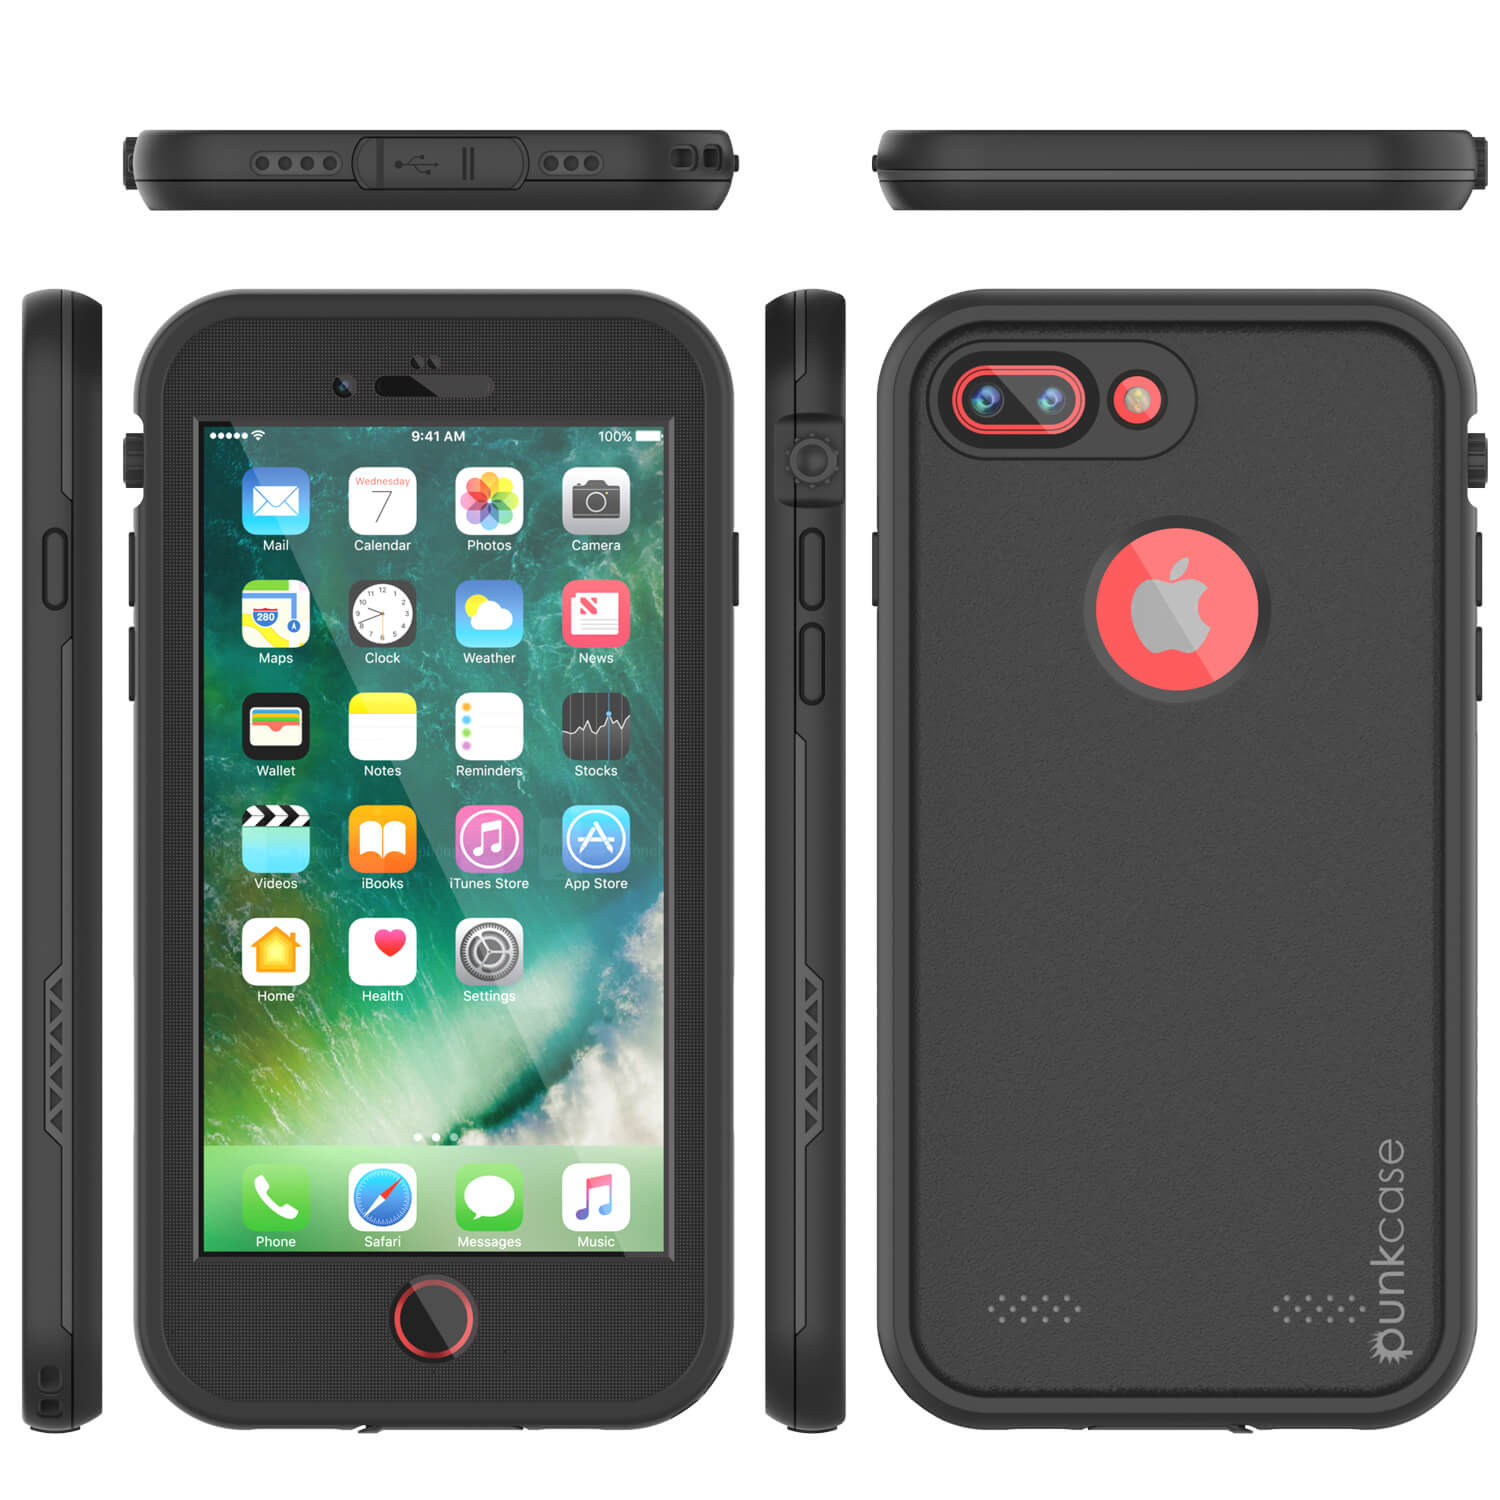 Will the iPhone 6s Plus cases fit iPhone 7 plus? - Quora